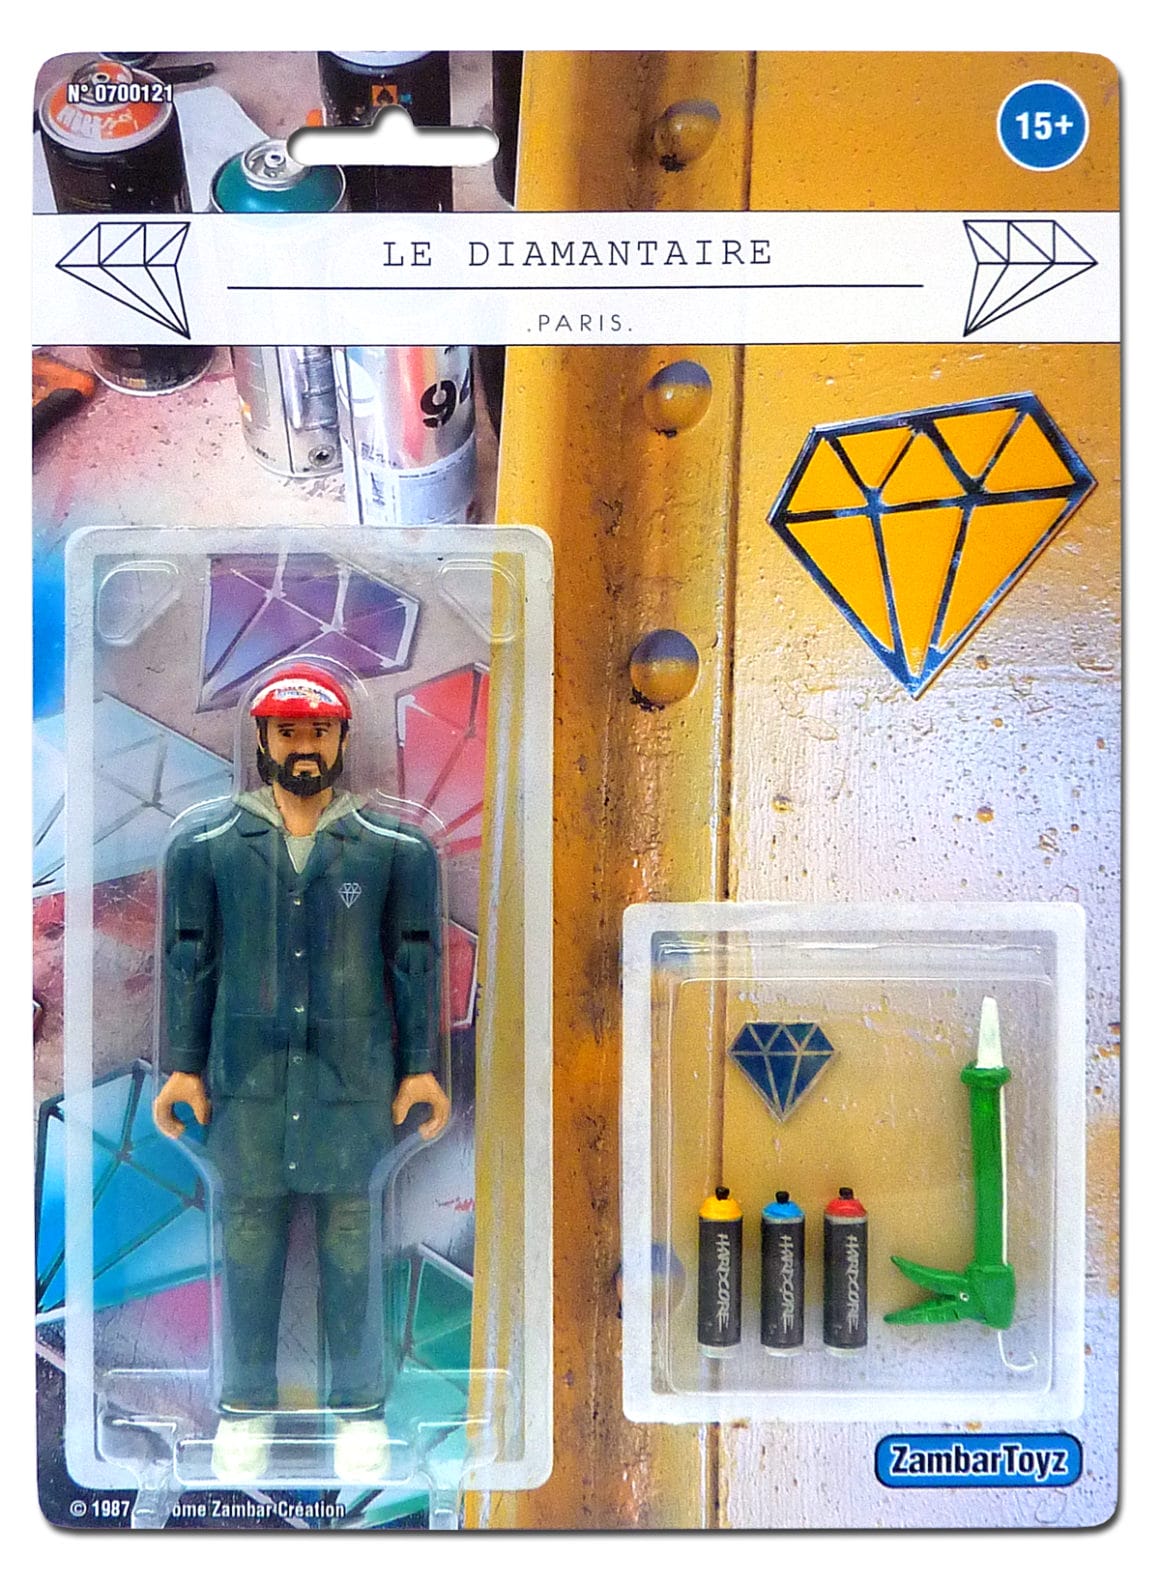 Le-diamantaire Zambar Toyz figurine